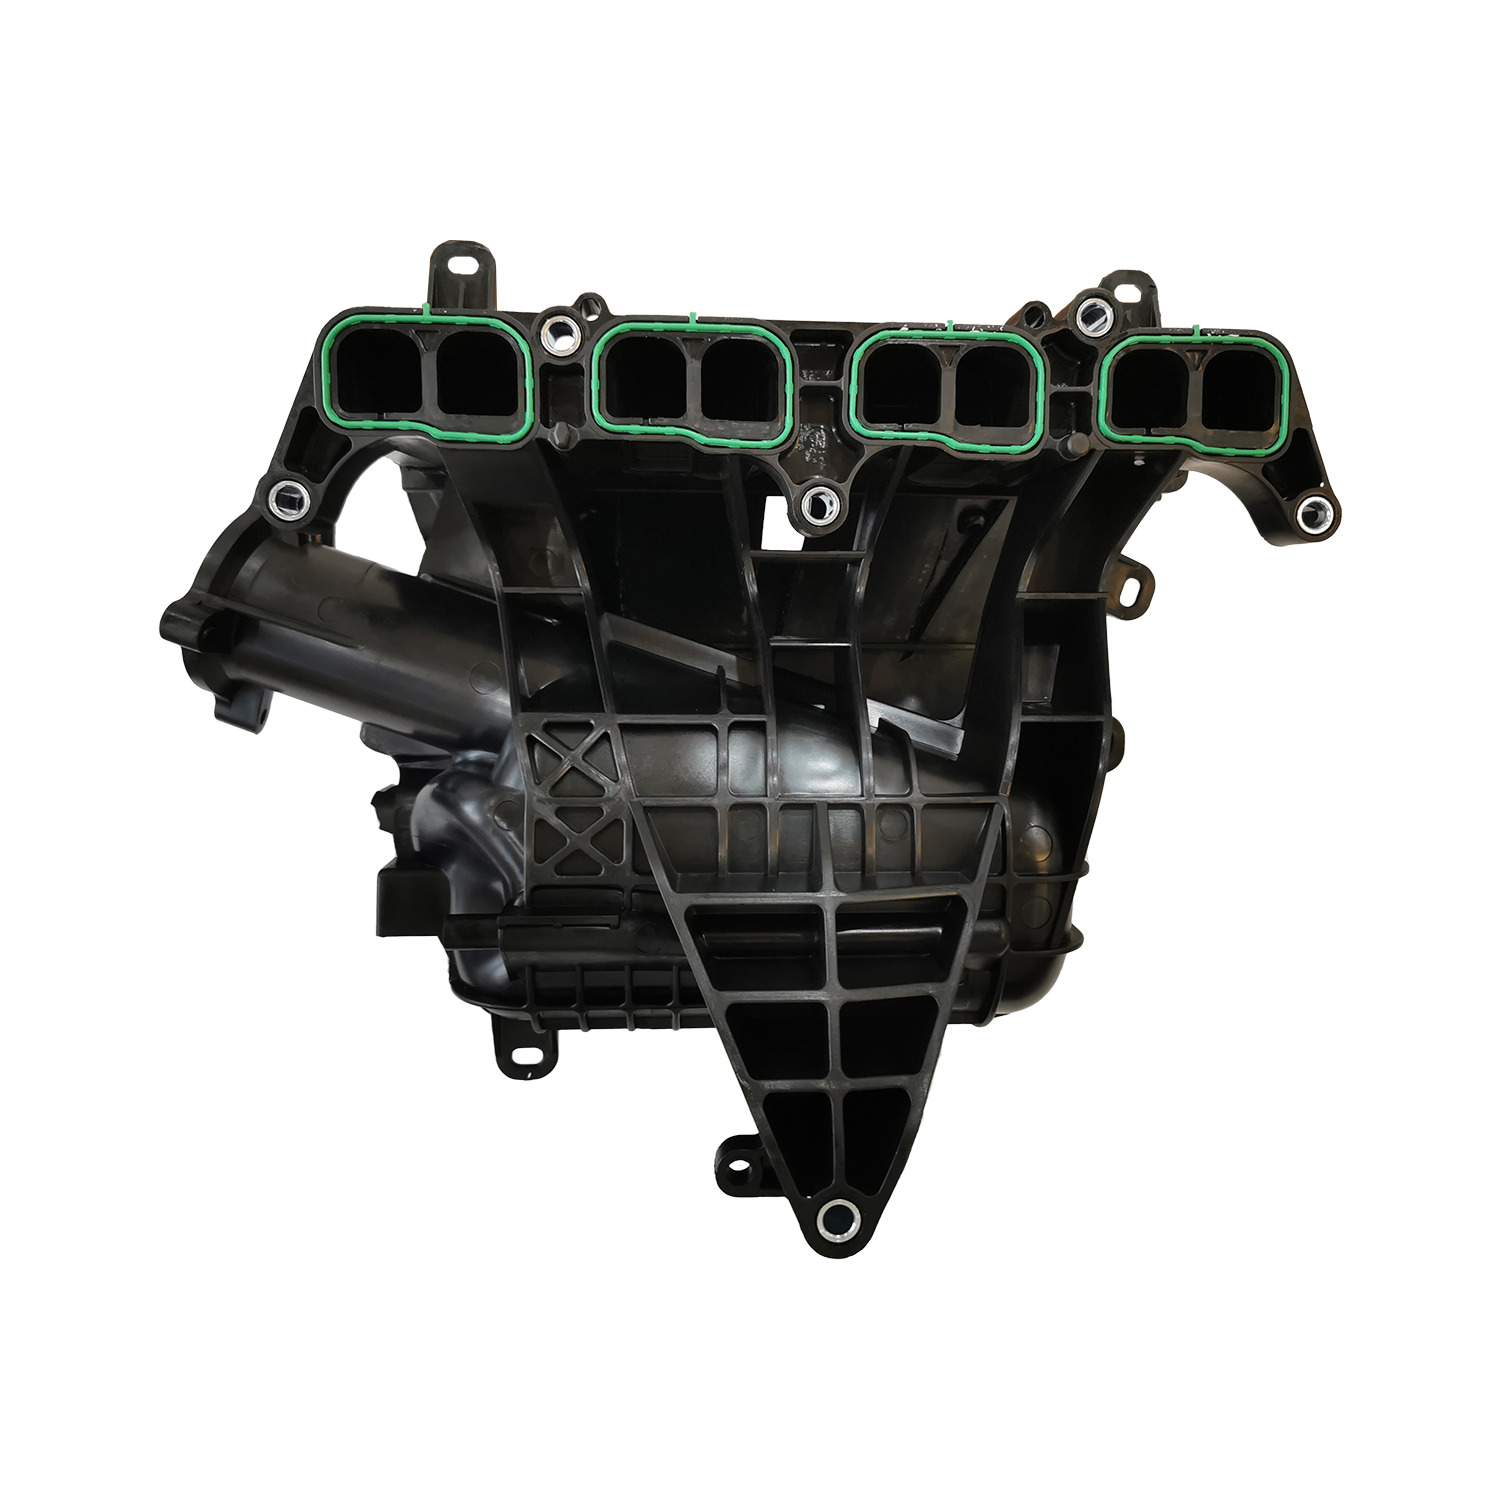 Intake Manifold For 2014-18 Mazda 3/2016-18 Mazda CX-3/2013-16 Mazda CX-5 2.0L